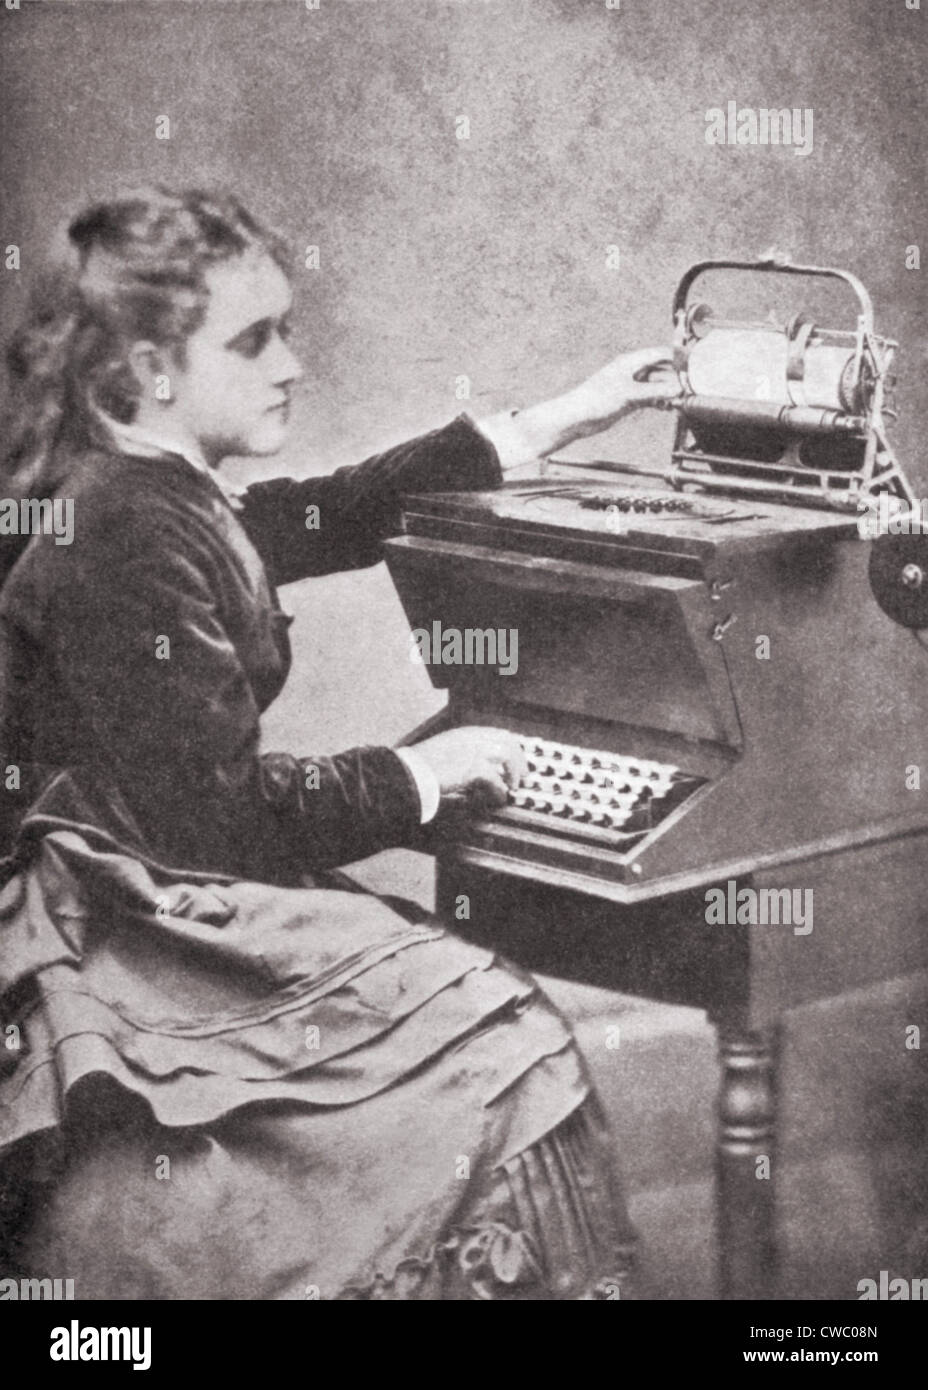 La máquina de escribir: un invento que nació por amor - El Periódico